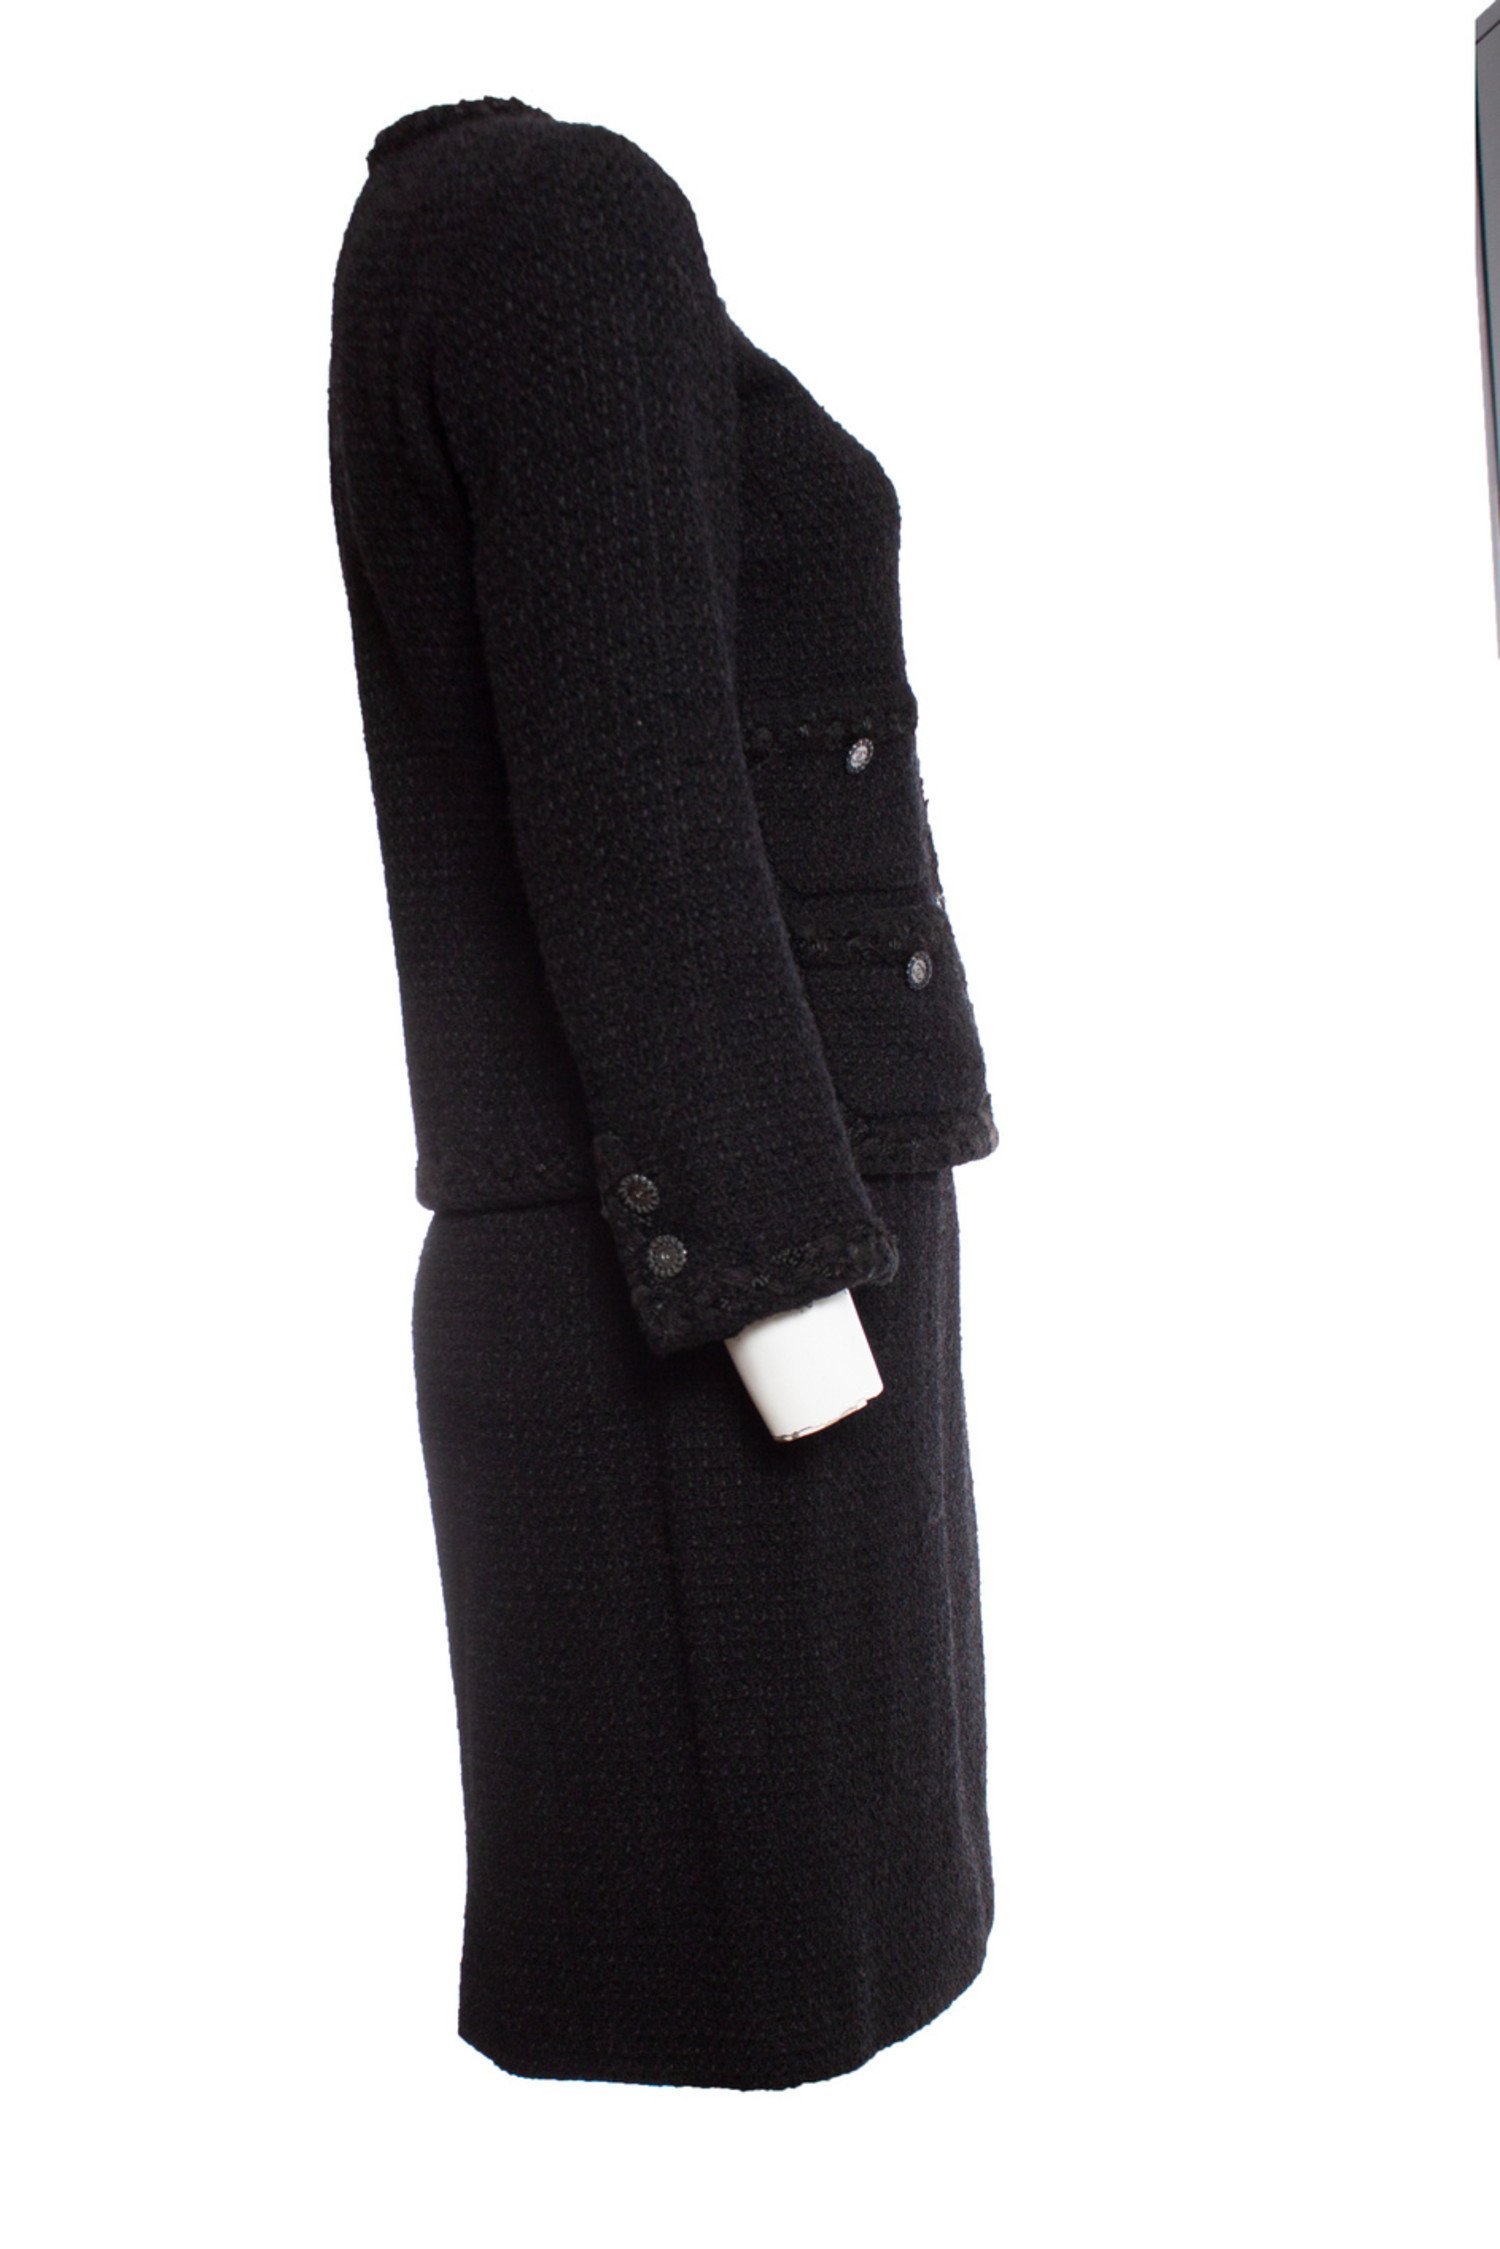 Chanel, Black boucle suit. - Unique Designer Pieces